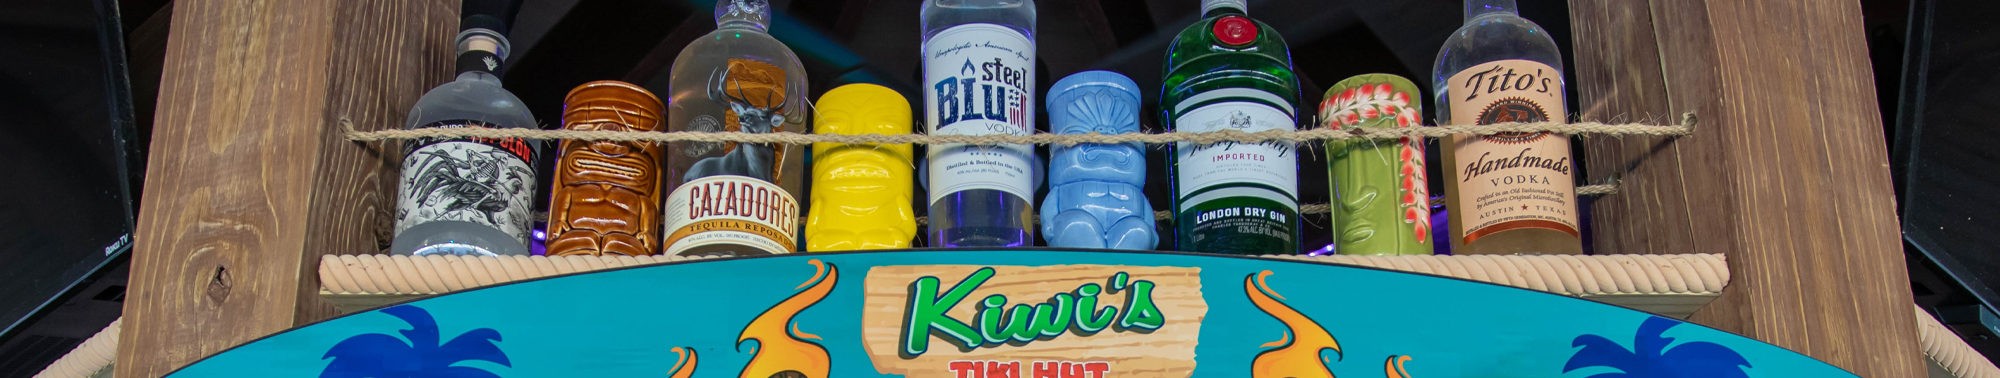 Tiki Hut bar bottles